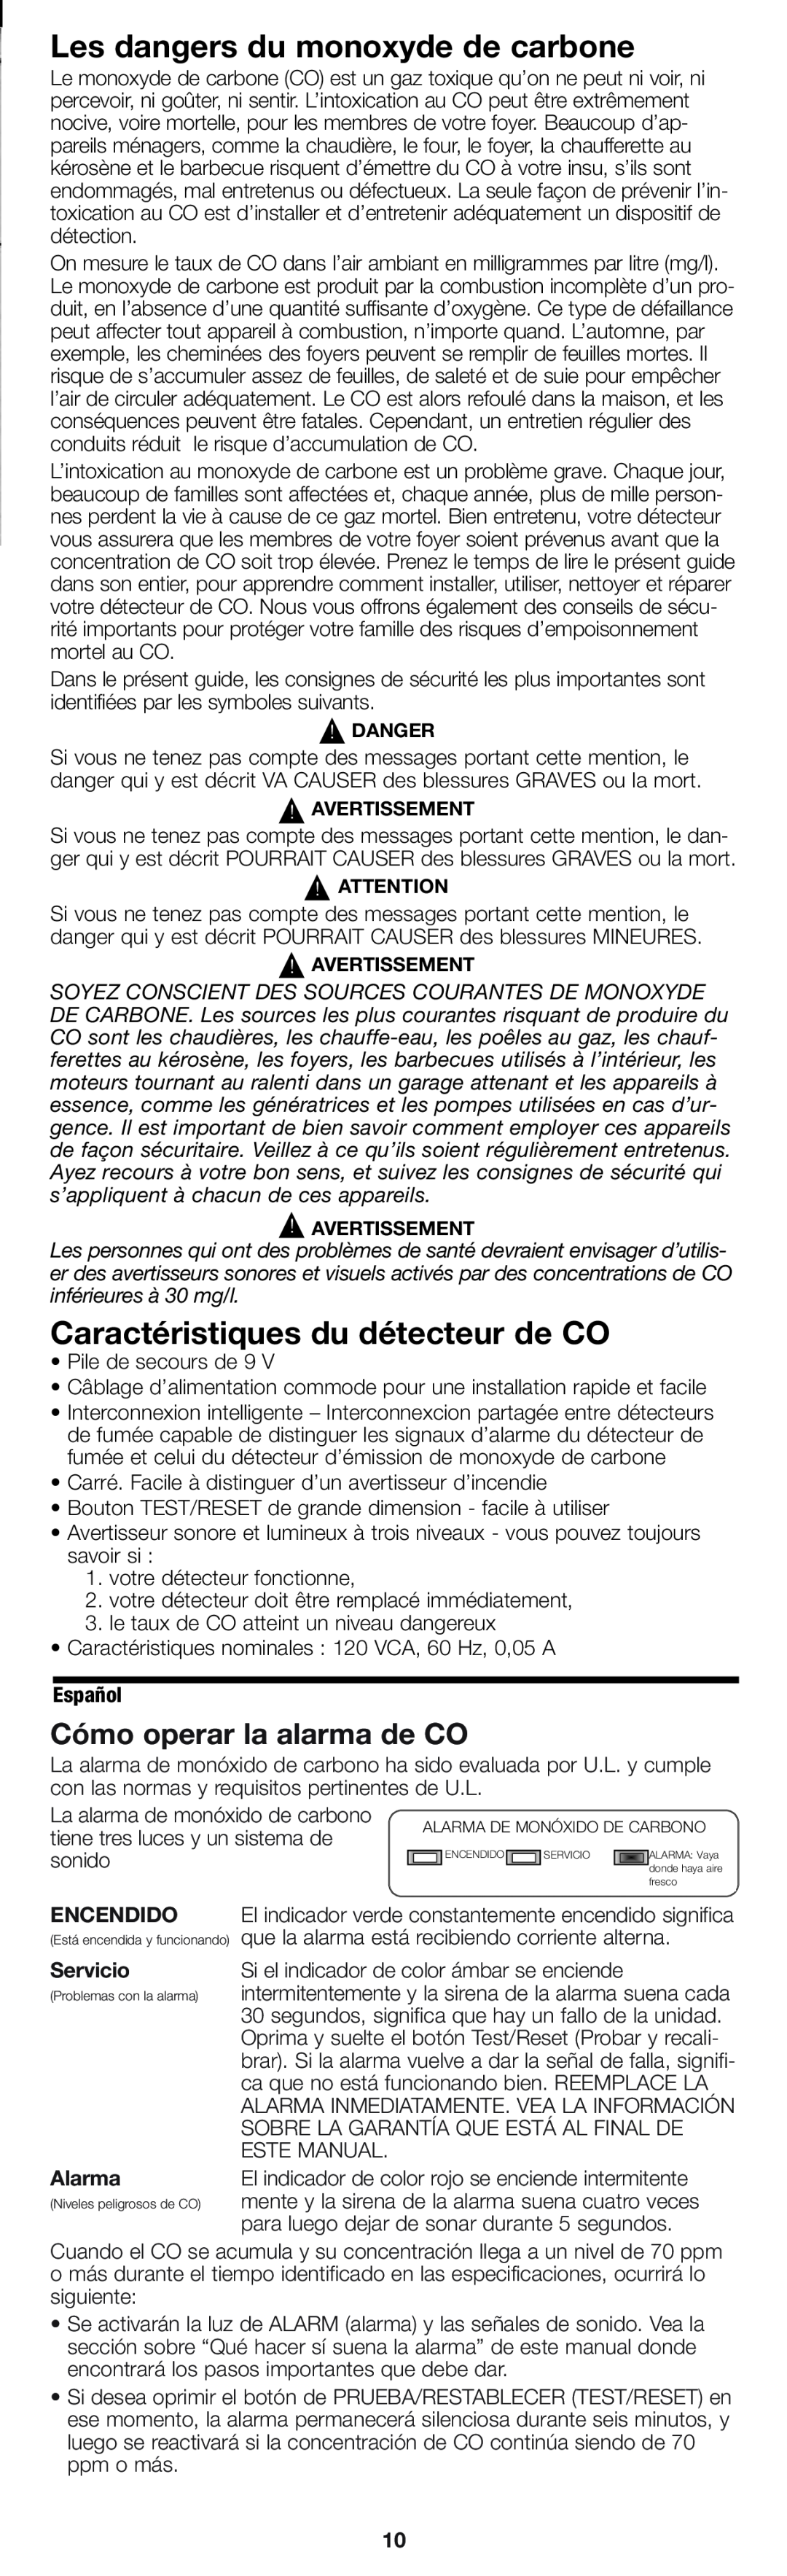 Firex pmn Les dangers du monoxyde de carbone, Caractéristiques du détecteur de CO, Cómo operar la alarma de CO, Encendido 